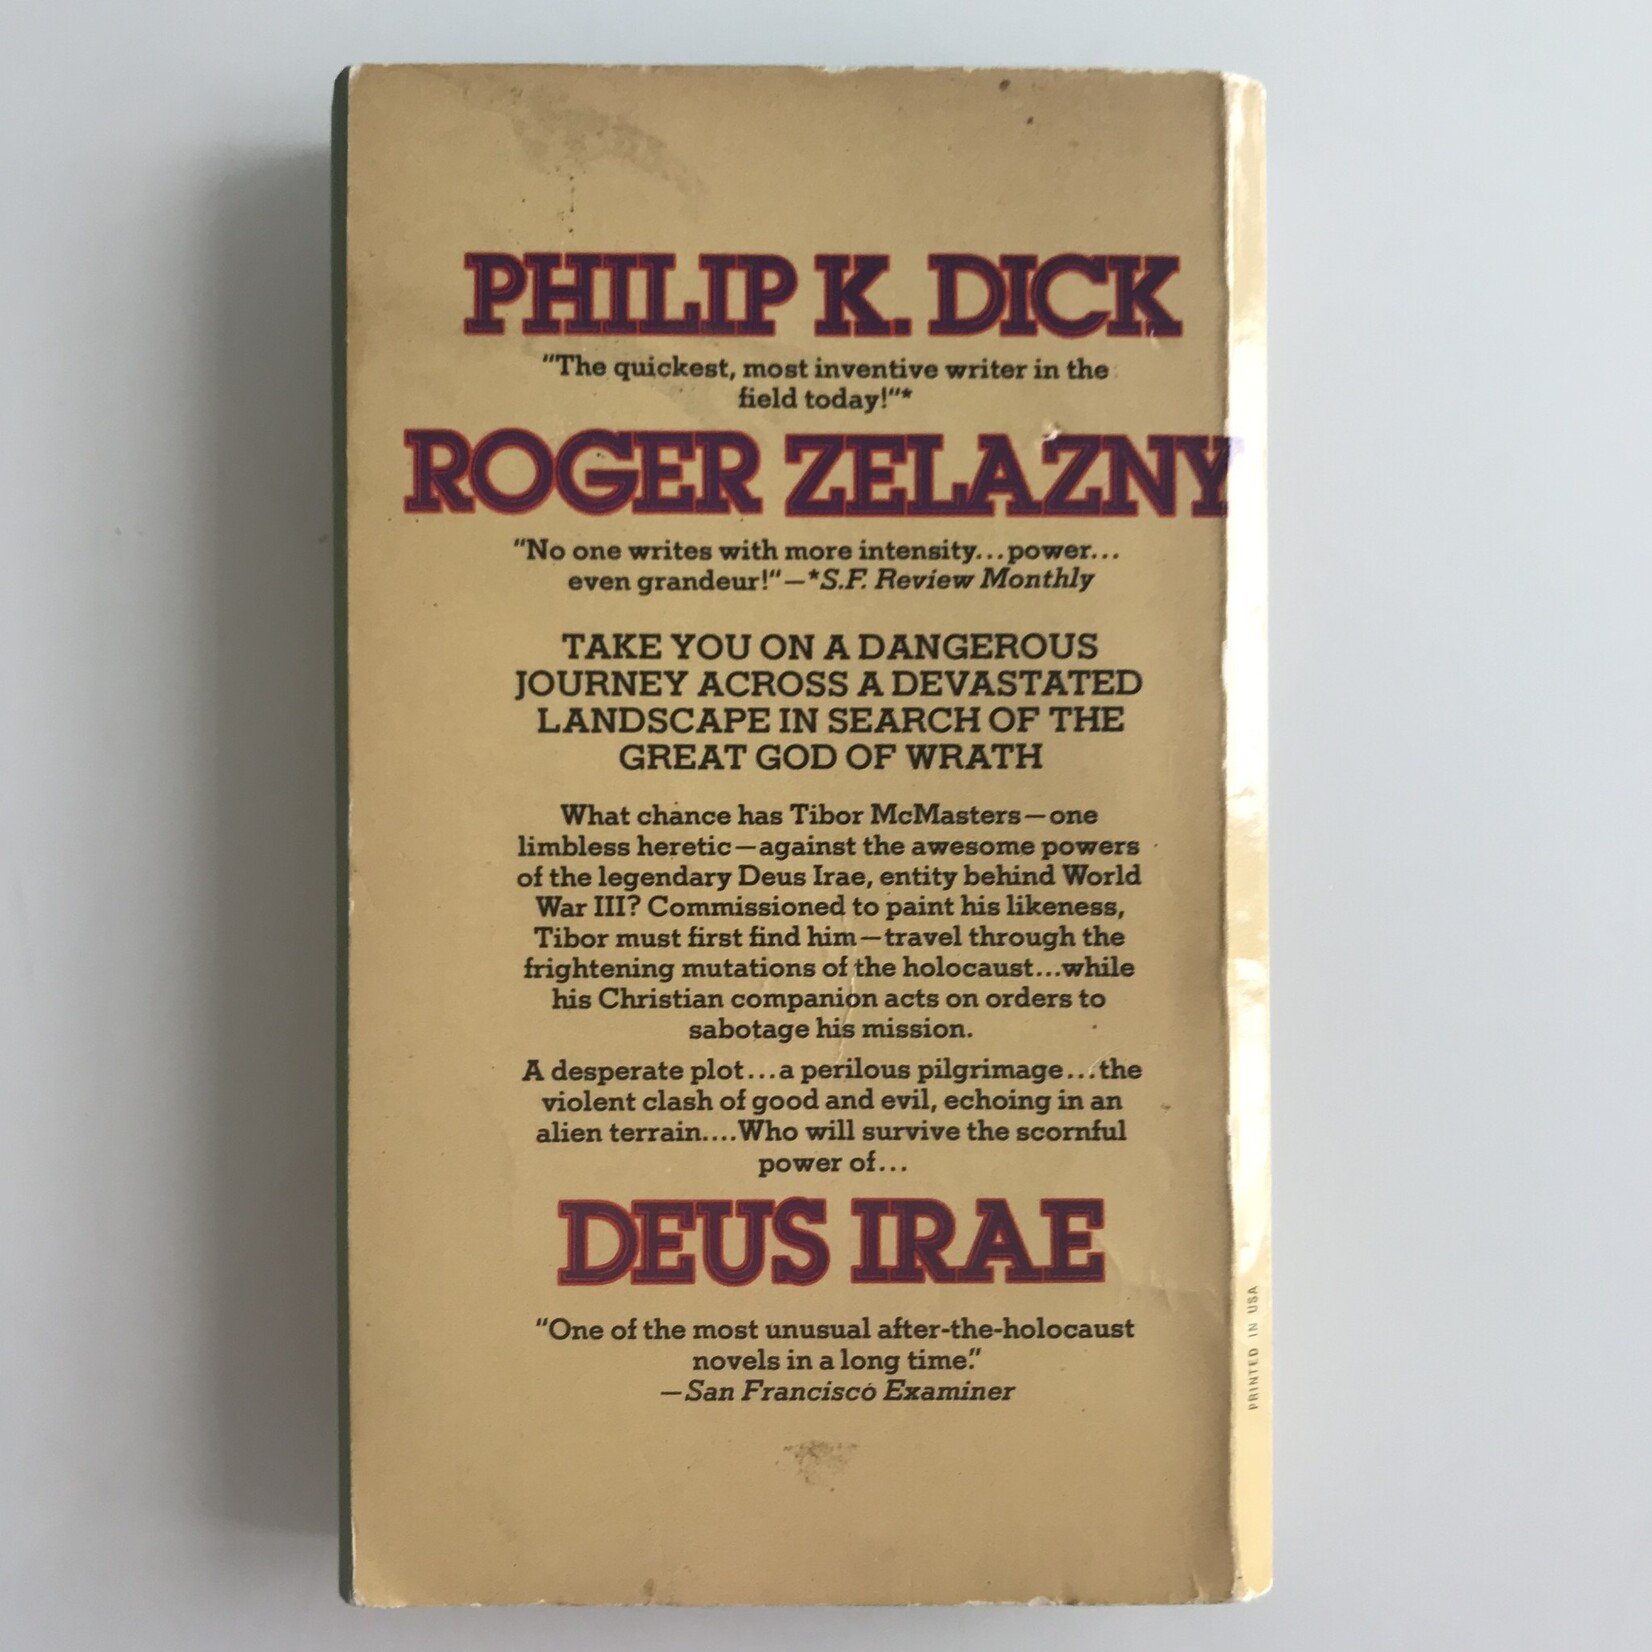 Philip K. Dick, Roger Zelazny - Deus Irae - Paperback (USED - G)